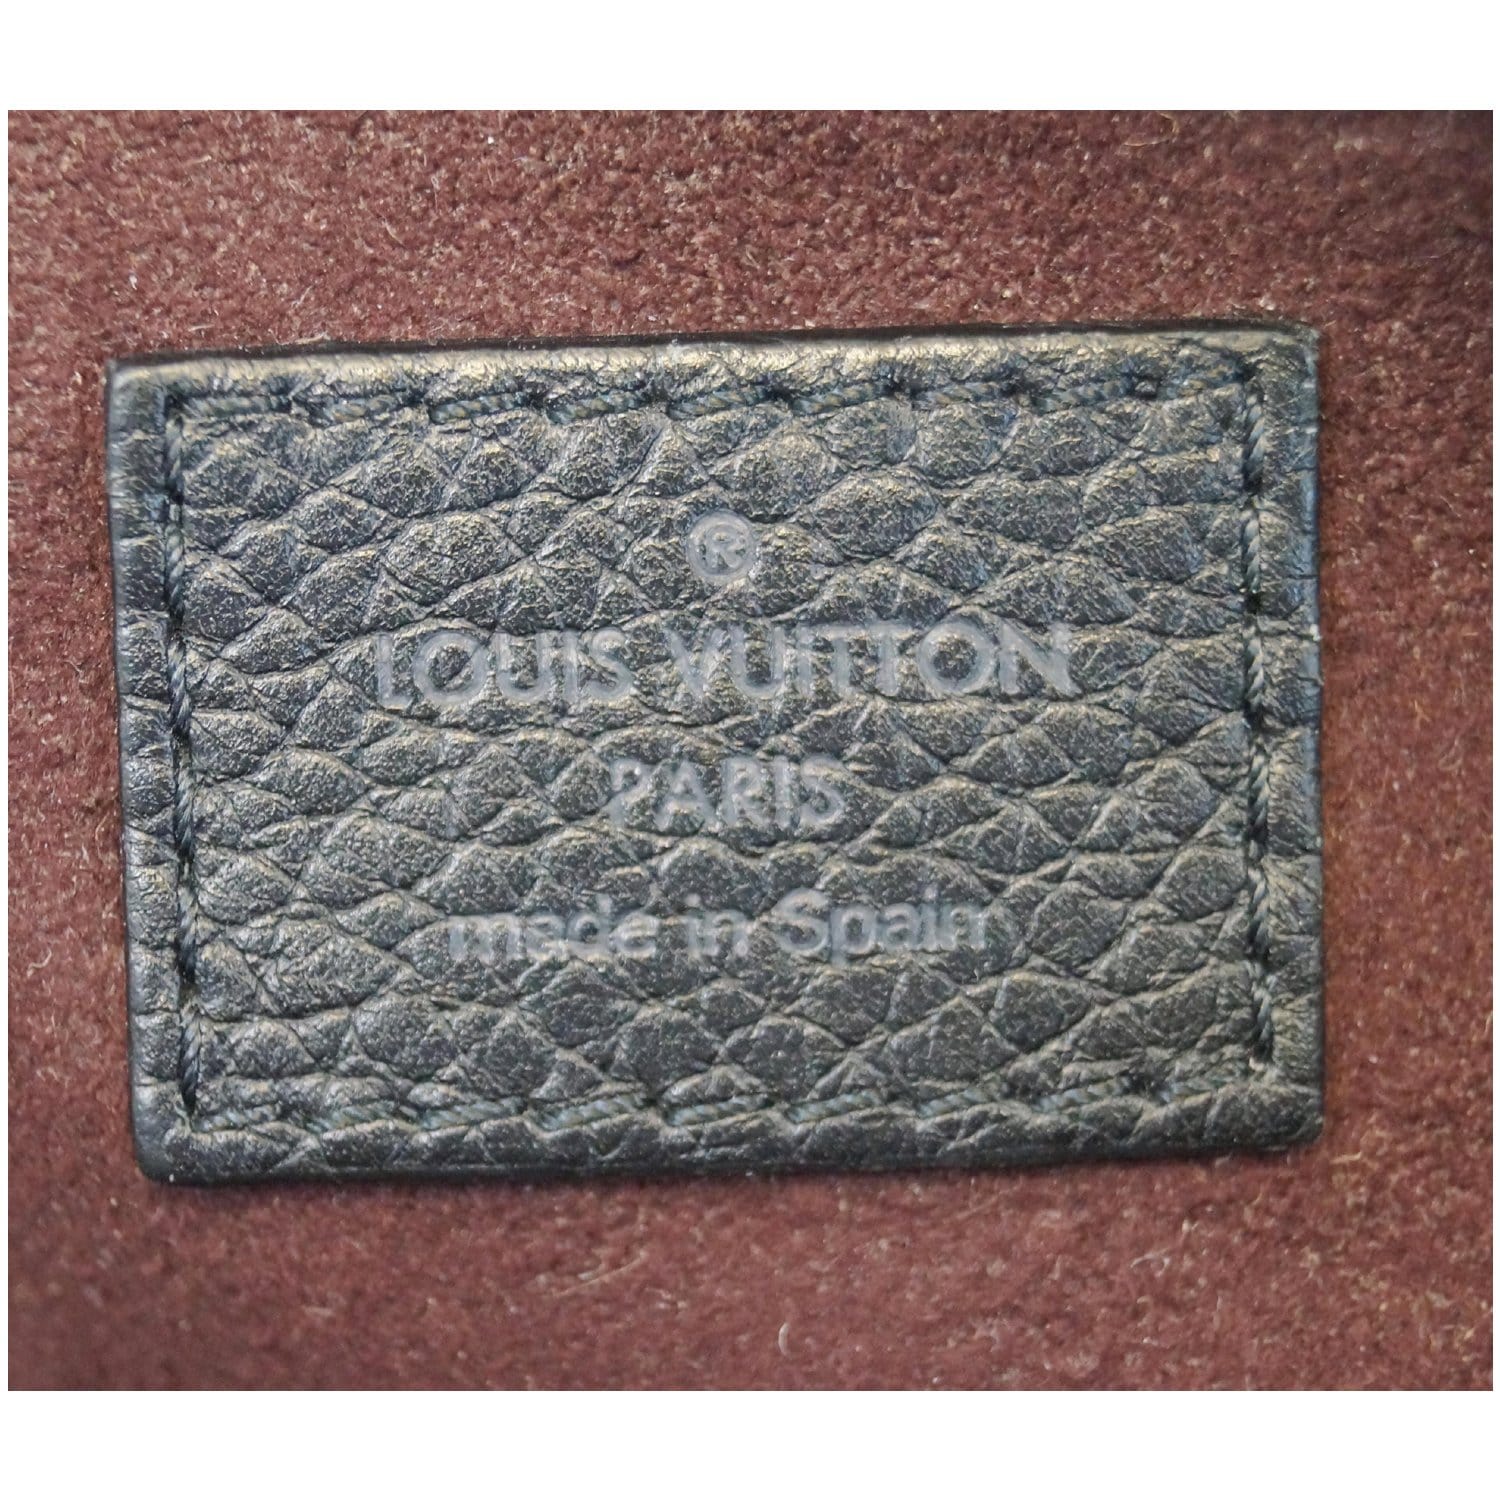 Louis Vuitton Mens Taurillon Black Leather Wallet